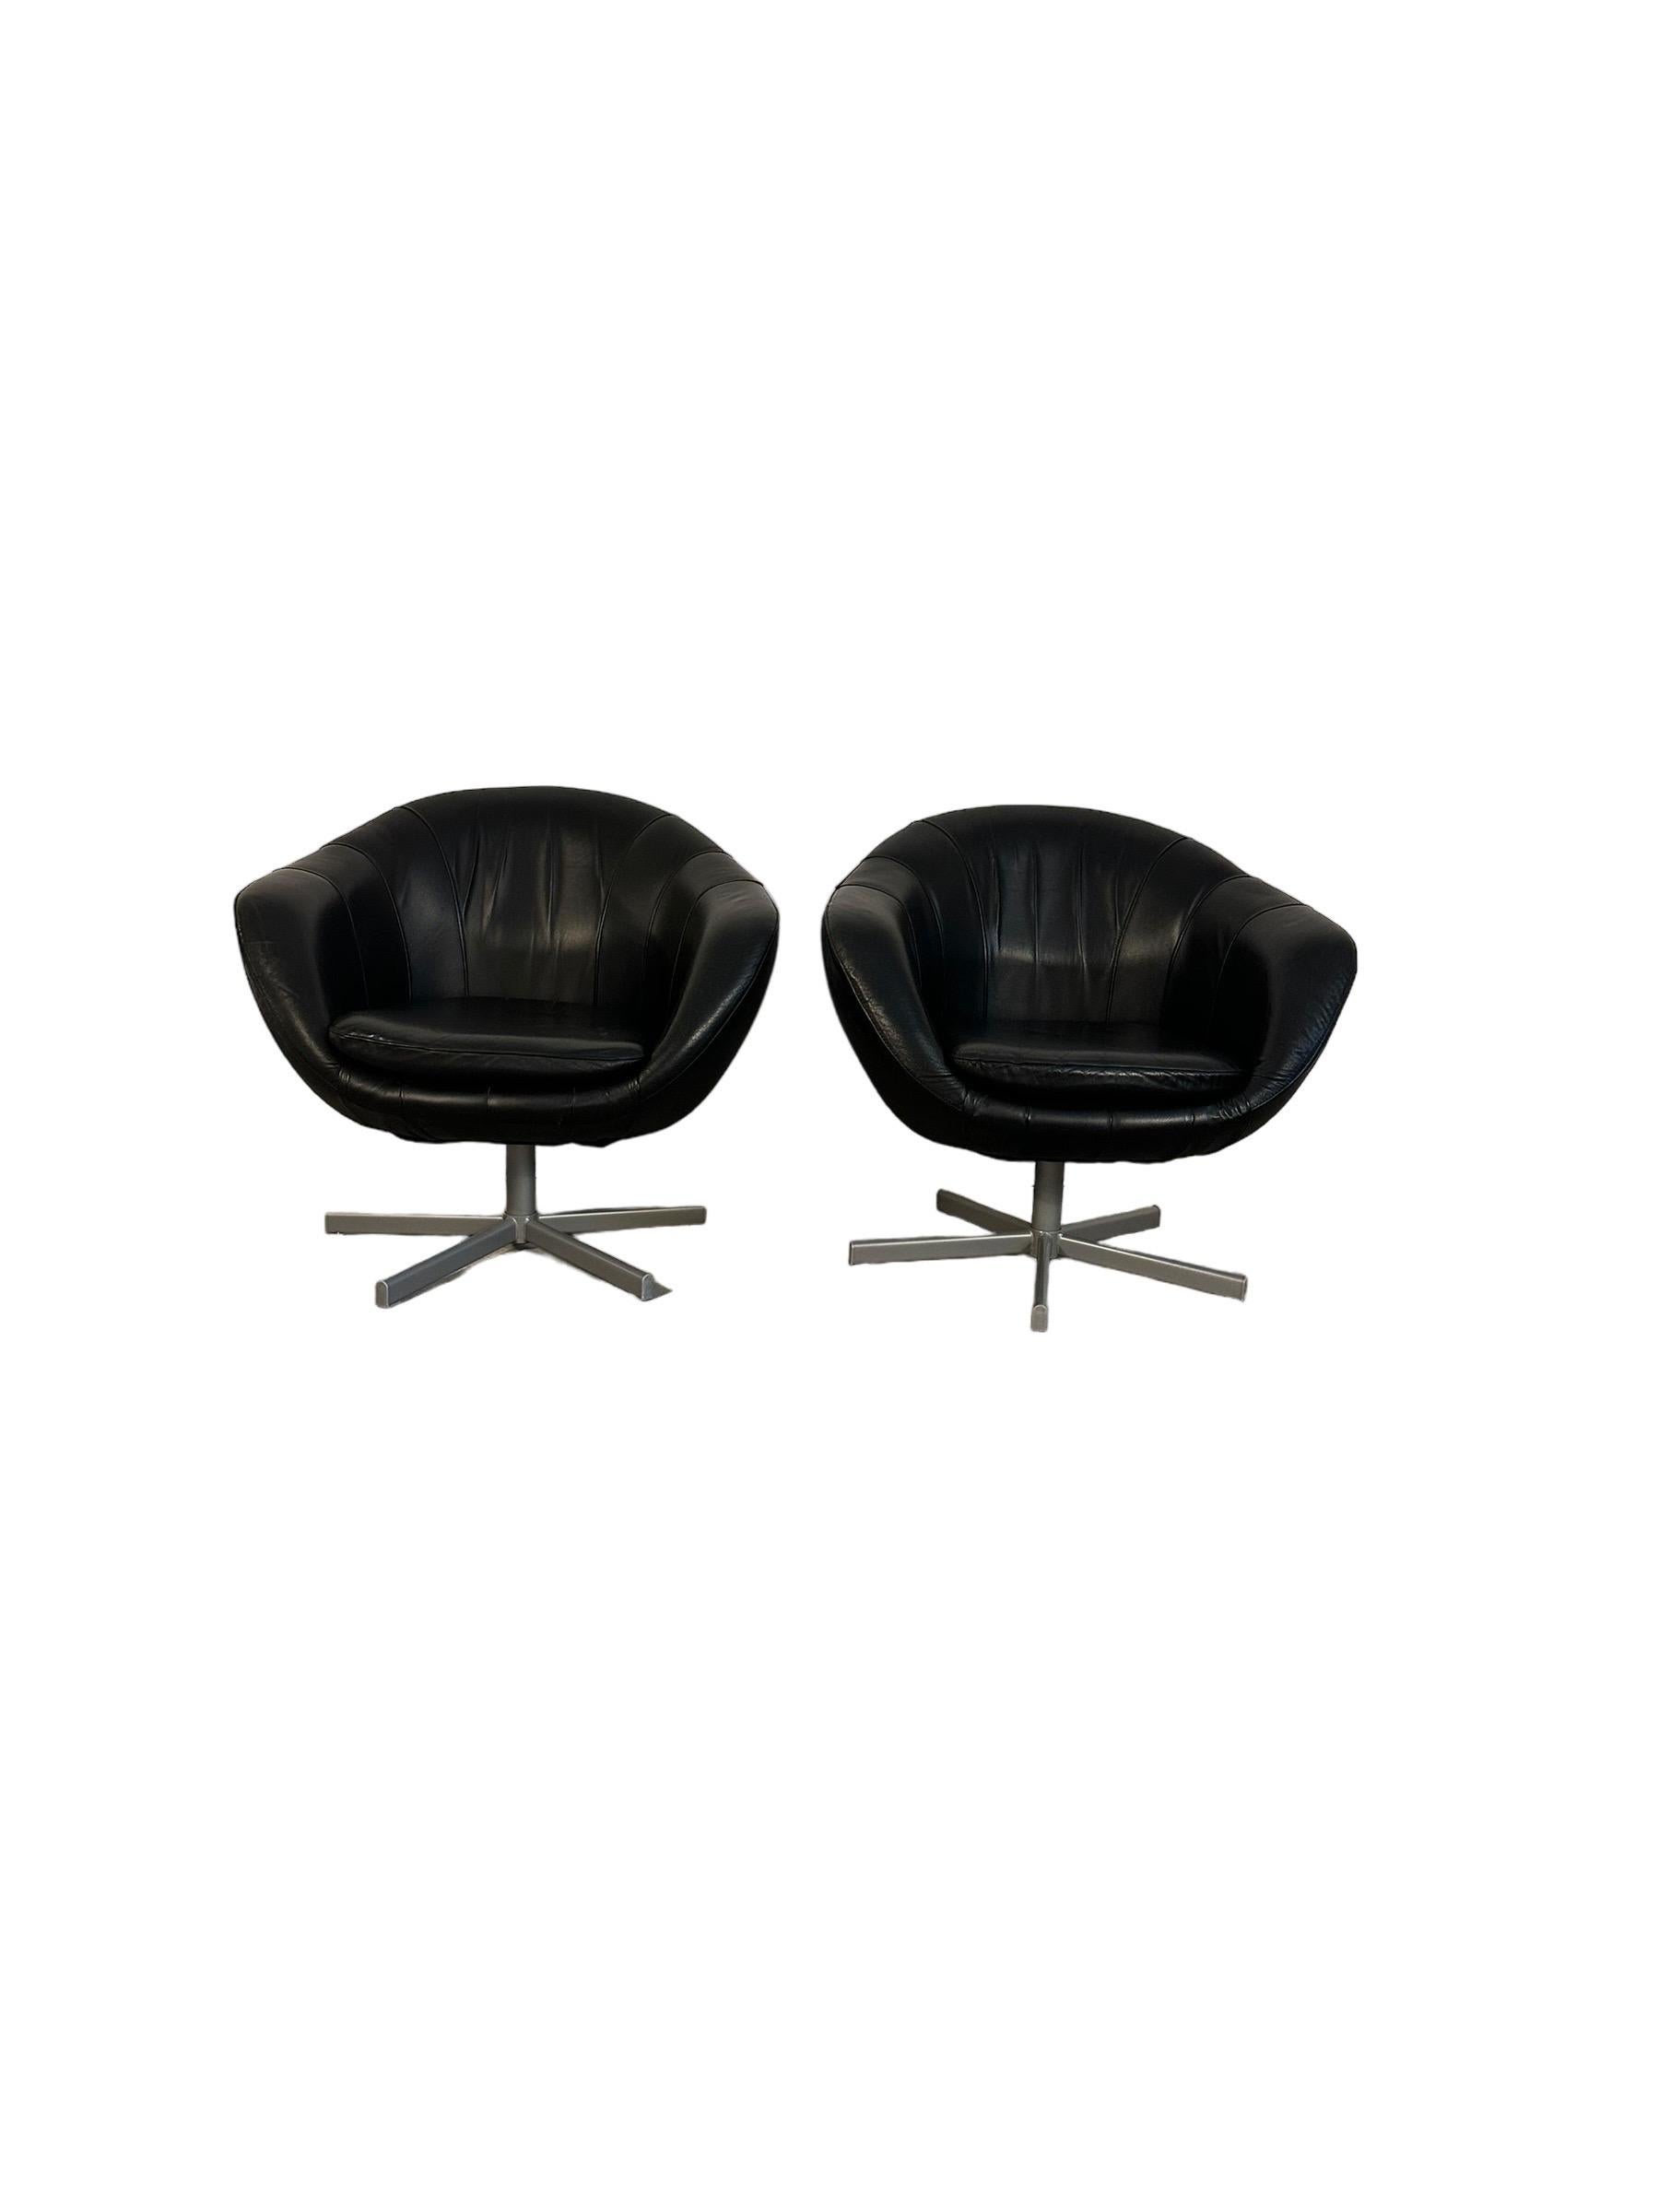 Voici nos fauteuils pods modernes du milieu du siècle : cuir noir intemporel, fonction pivotante amusante et en bon état. Ils sont prêts à ajouter une touche de style classique à votre espace.